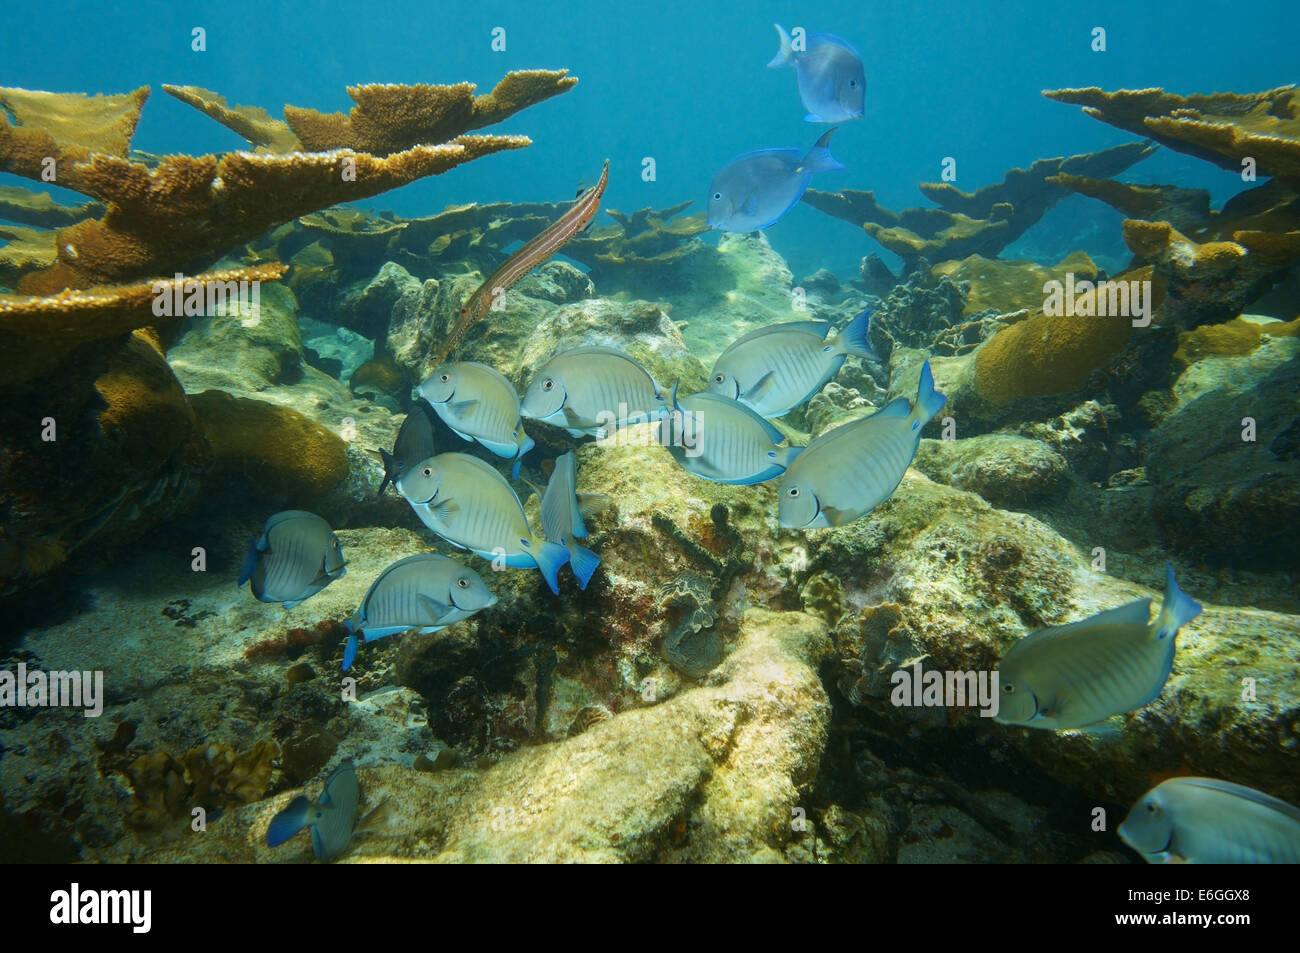 L'École de poissons d'Doctorfish tang dans un récif de corail de la mer des Caraïbes Banque D'Images